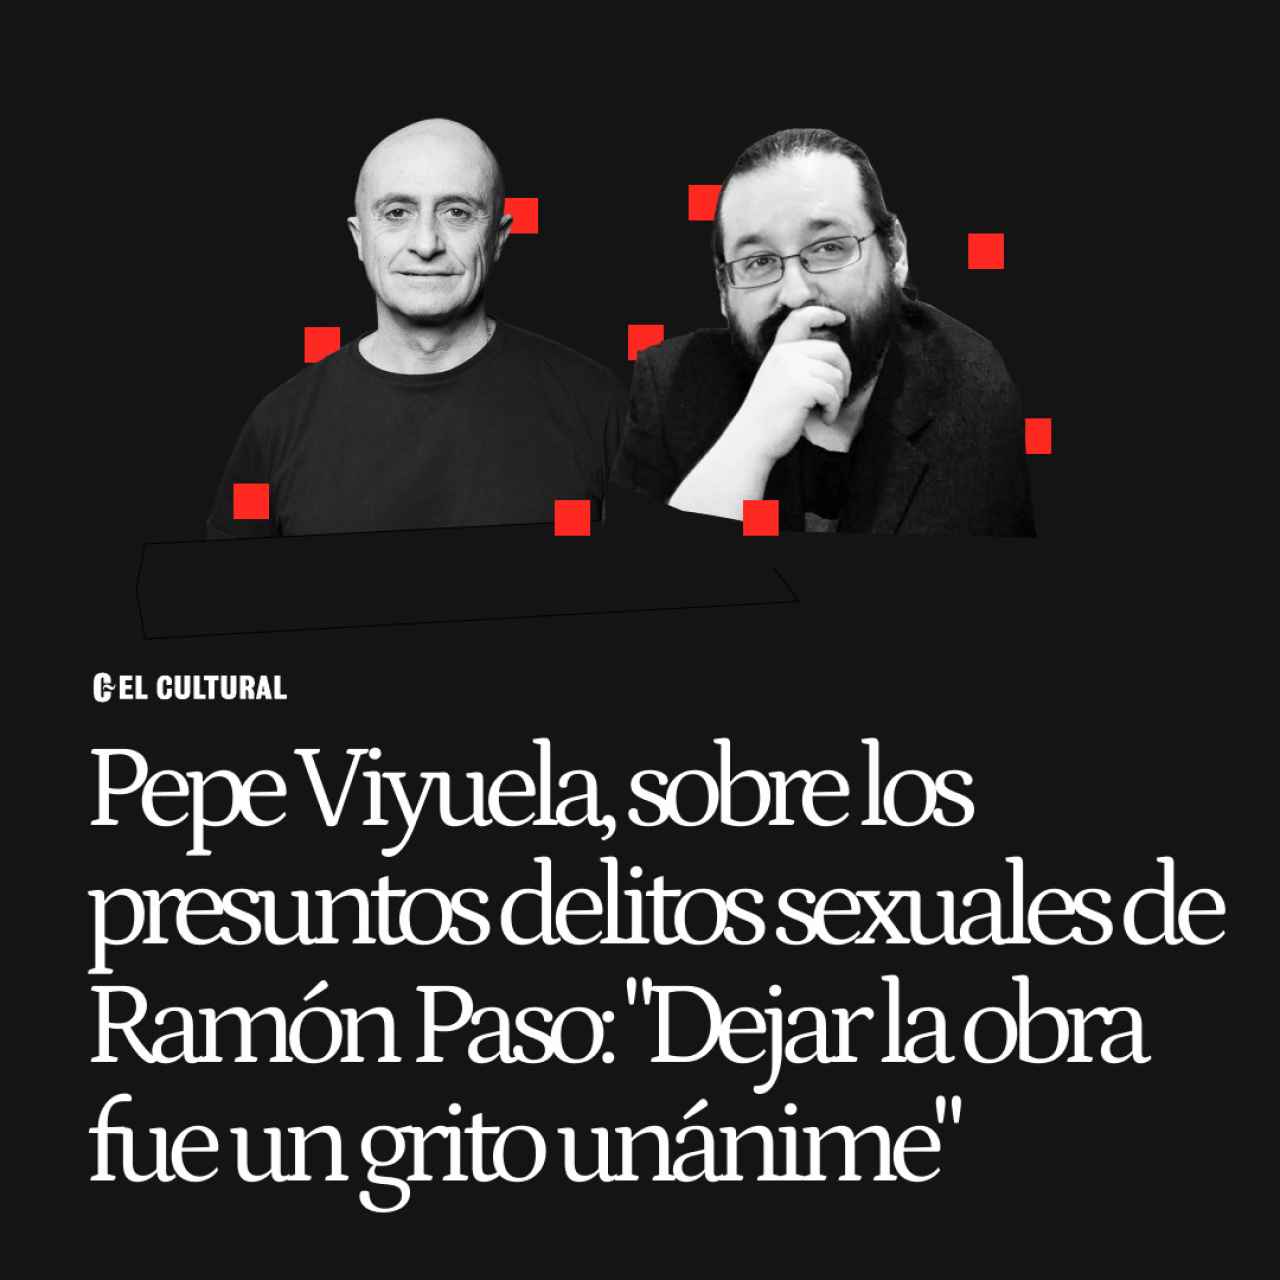 Pepe Viyuela, sobre los presuntos delitos sexuales de Ramón Paso: "Dejar la obra fue un grito unánime"